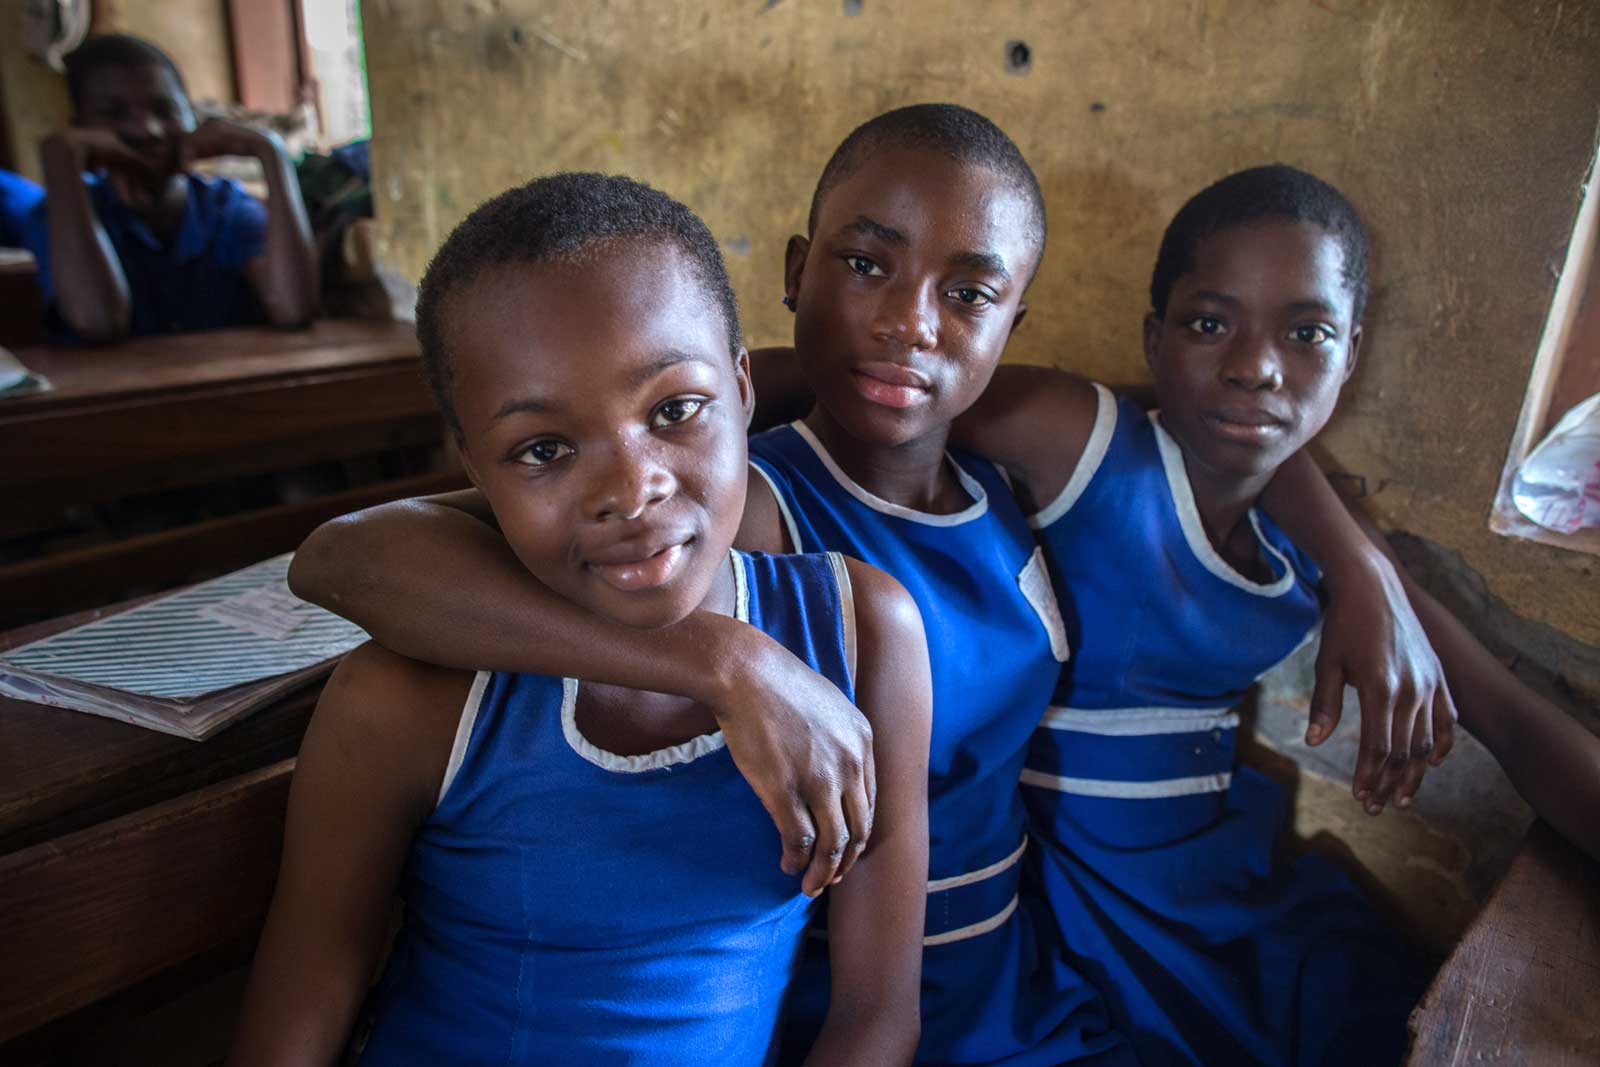   Après avoir reçu le vaccin anti-VPH, ces jeunes filles courent un risque beaucoup plus faible de contracter le cancer du col de l’utérus au cours de leur vie. Ce cancer constitue une cause première de mortalité chez les femmes ghanéennes mais aussi partout dans le monde en développement.